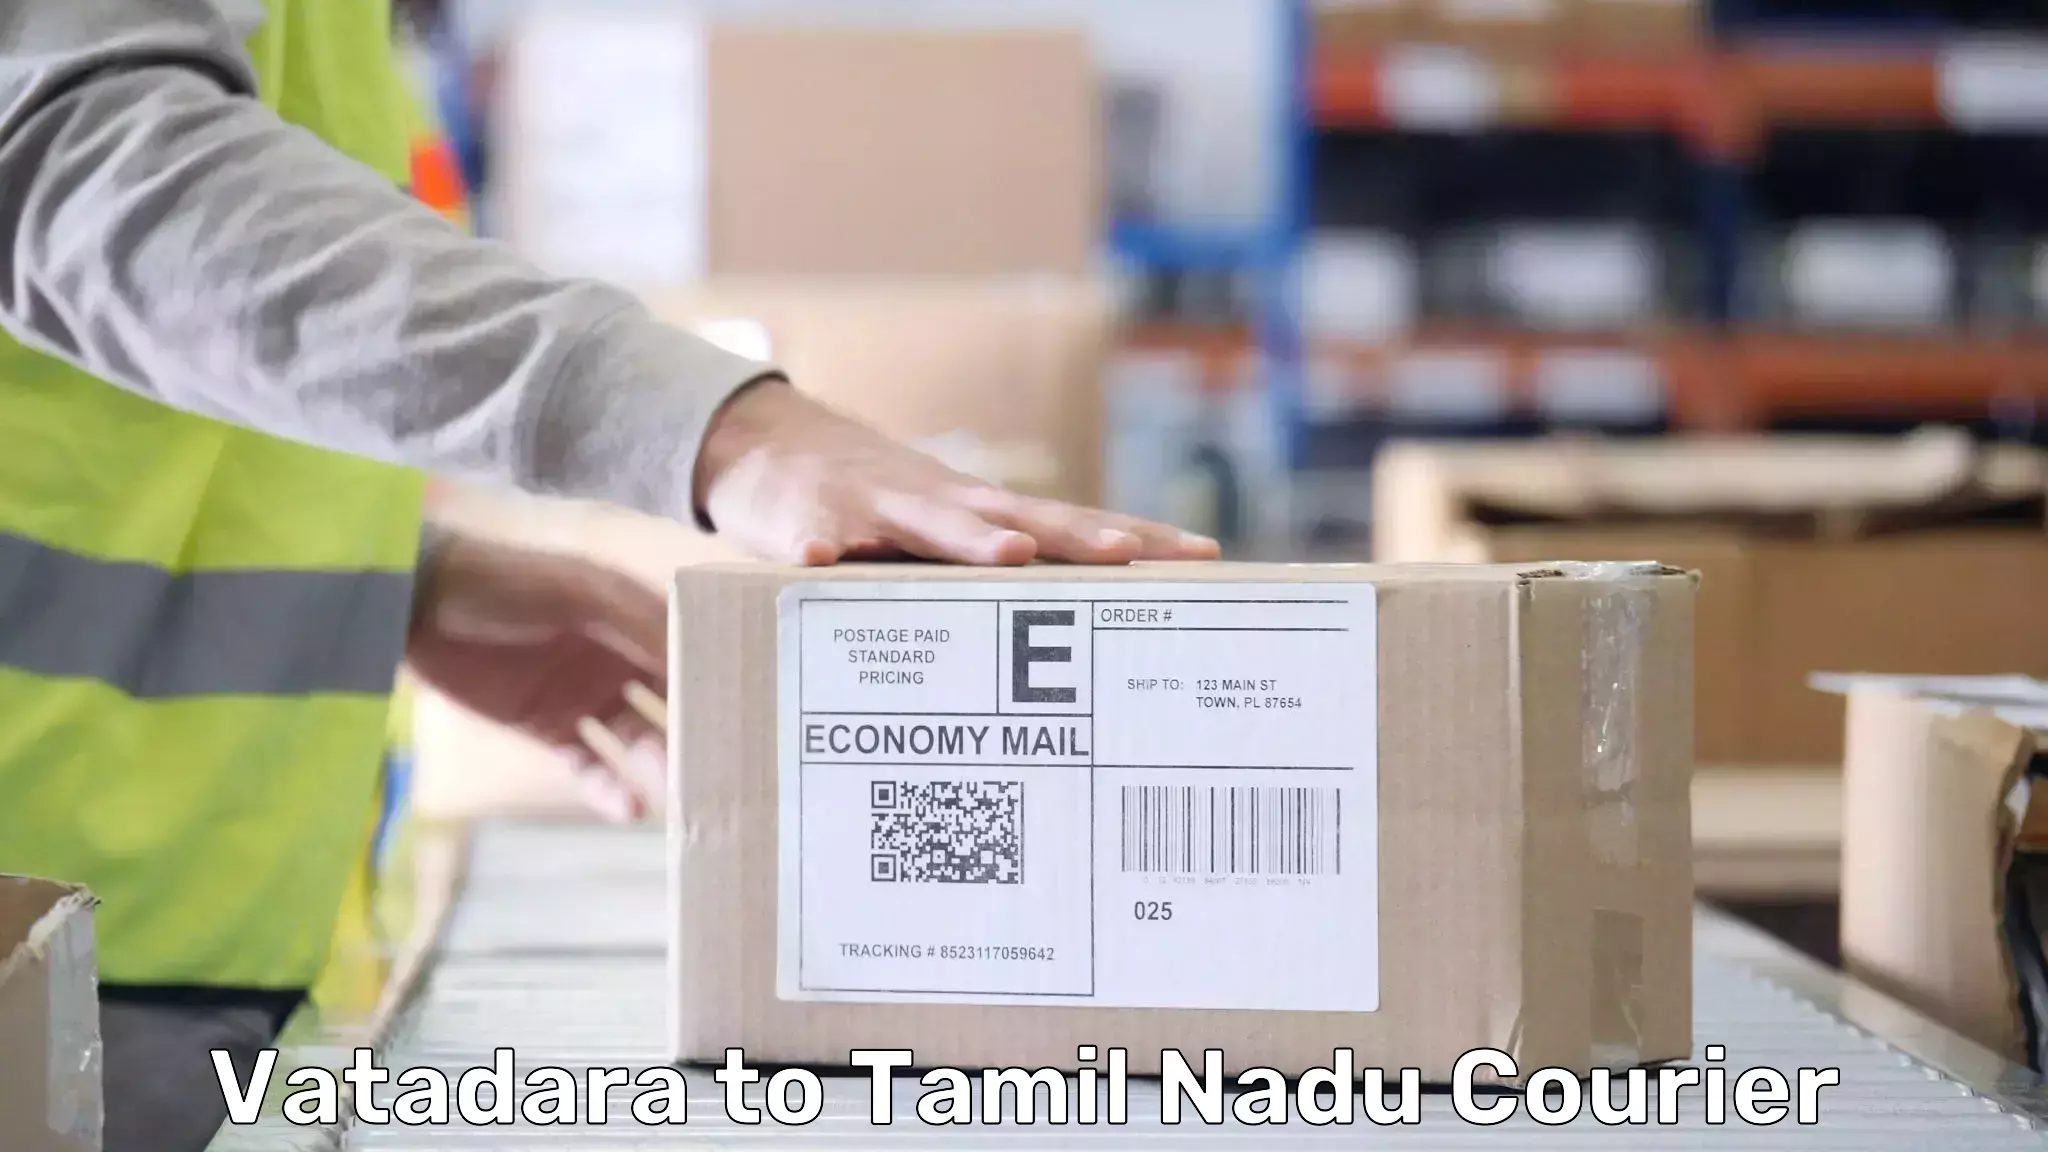 Emergency baggage service Vatadara to Tamil Nadu